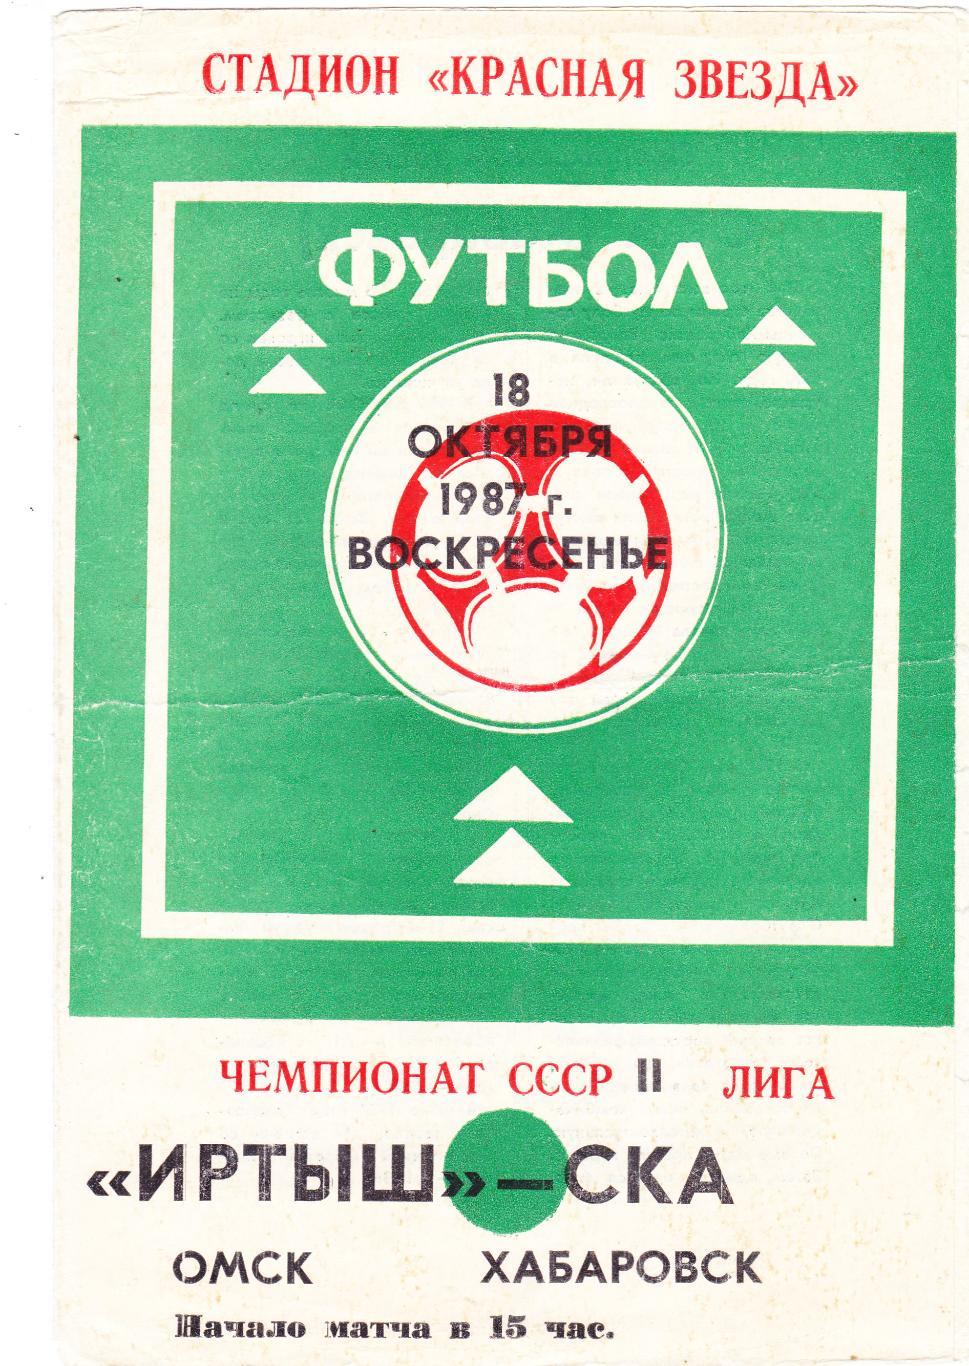 Иртыш (Омск) - СКА (Хабаровск) 18.10.1987